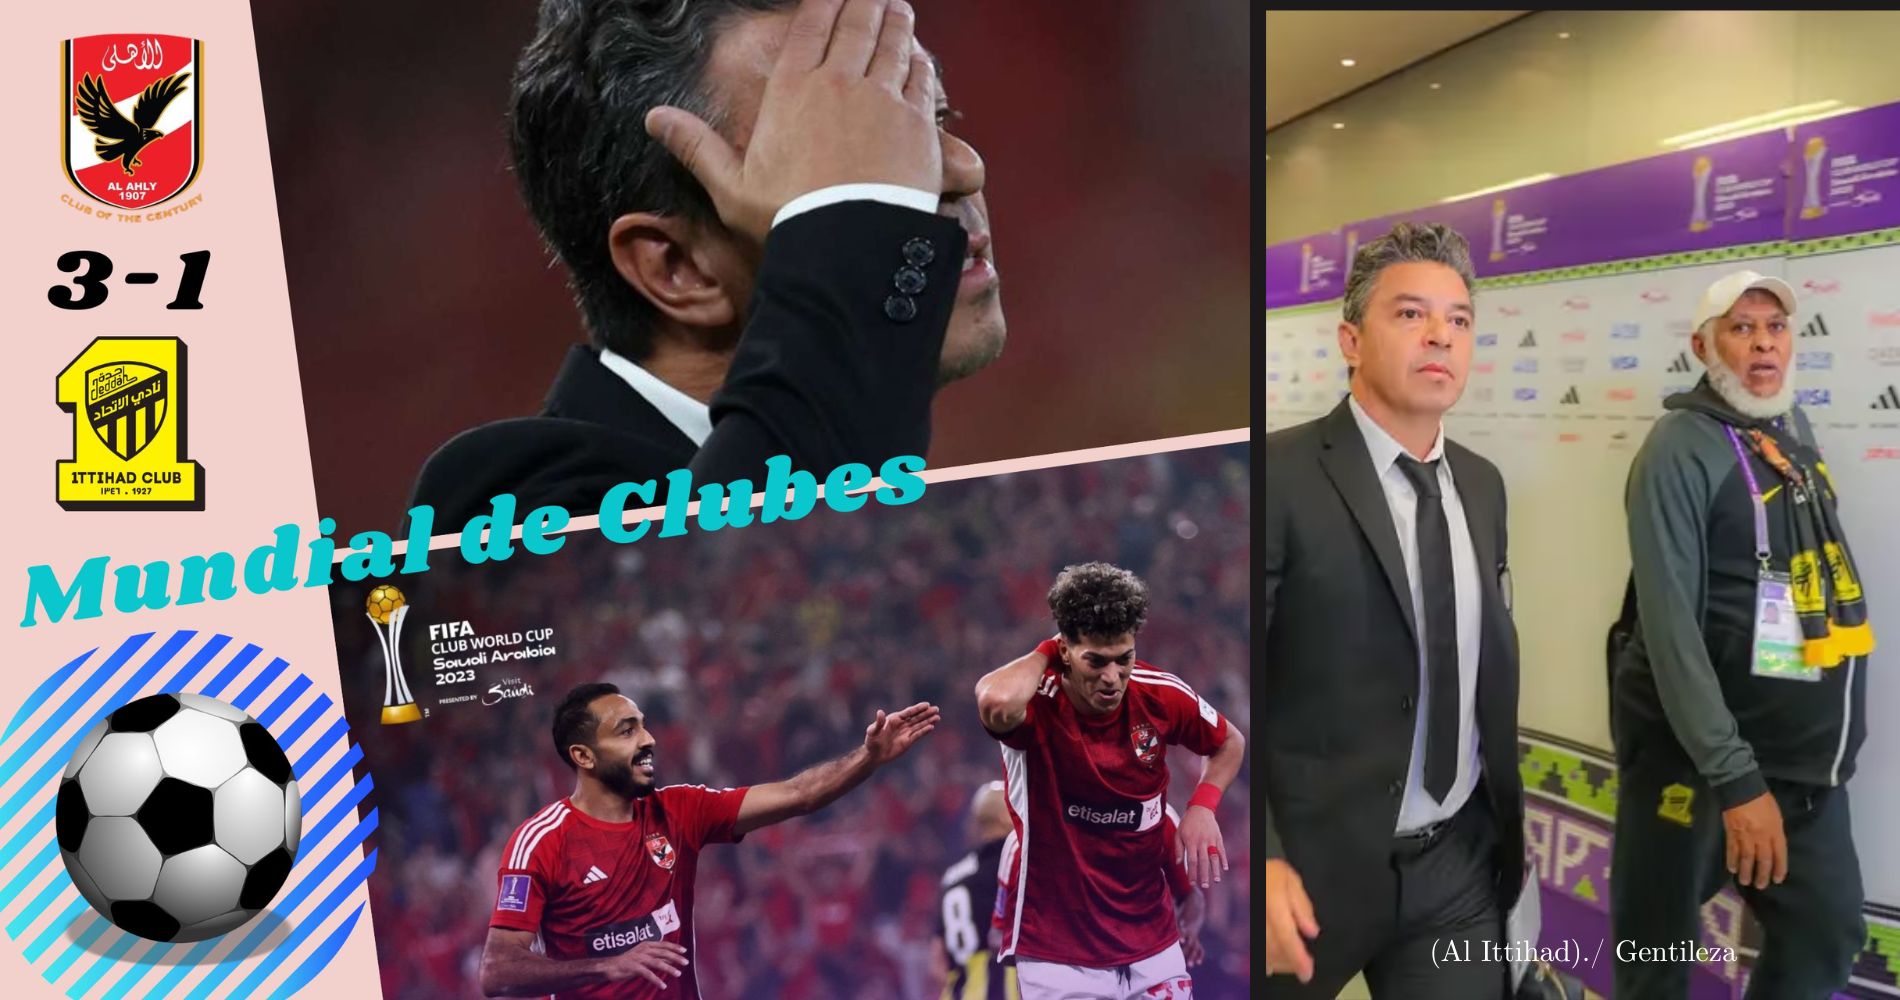 Mundial de Clubes | El Al Ittihad de Gallardo perdió y quedó eliminado del certamen | GOLES